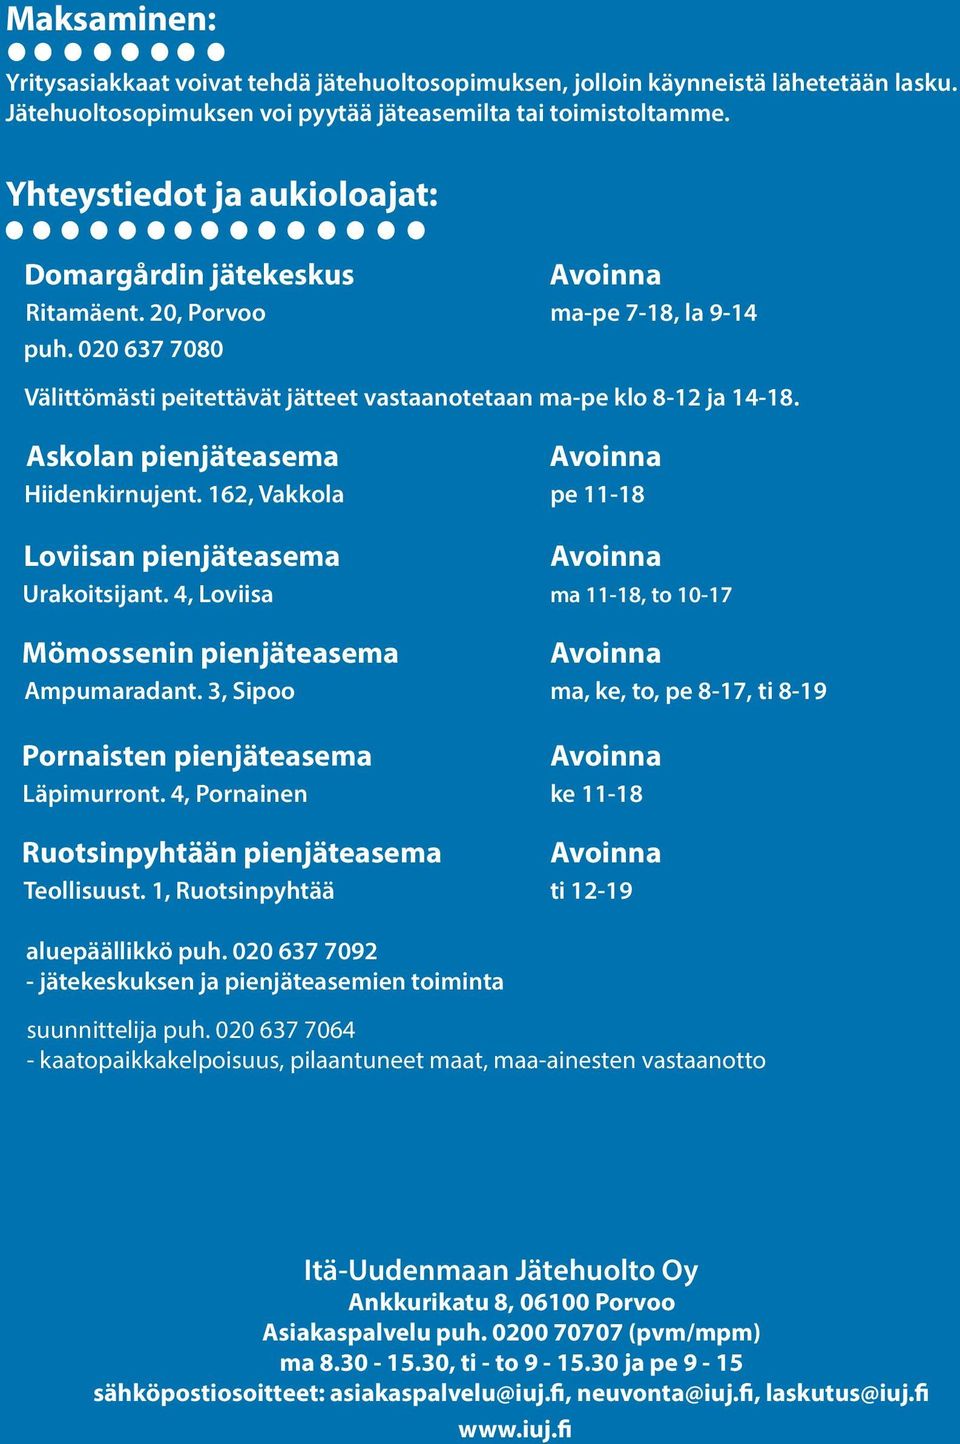 Askolan pienjäteasema Hiidenkirnujent. 162, Vakkola pe 11-18 Loviisan pienjäteasema Urakoitsijant. 4, Loviisa ma 11-18, to 10-17 Mömossenin pienjäteasema Ampumaradant.